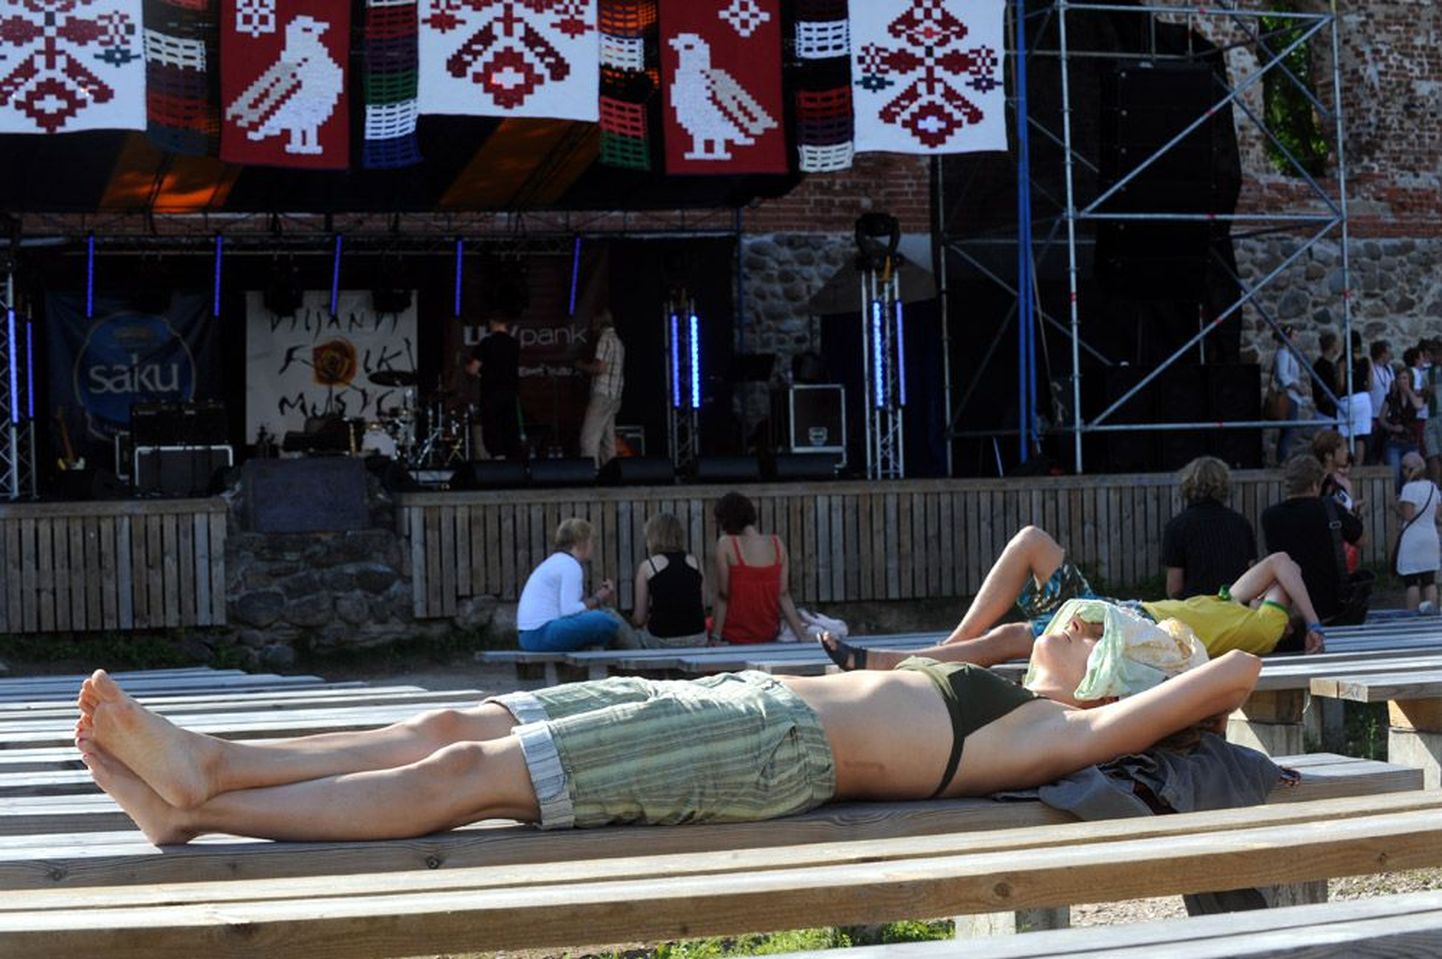 Оставшиеся два месяца лета предлагают меломанам целый фейерверк музыкальных фестивалей, которые пройдут по всей Эстонии. Только бы погода не подвела!